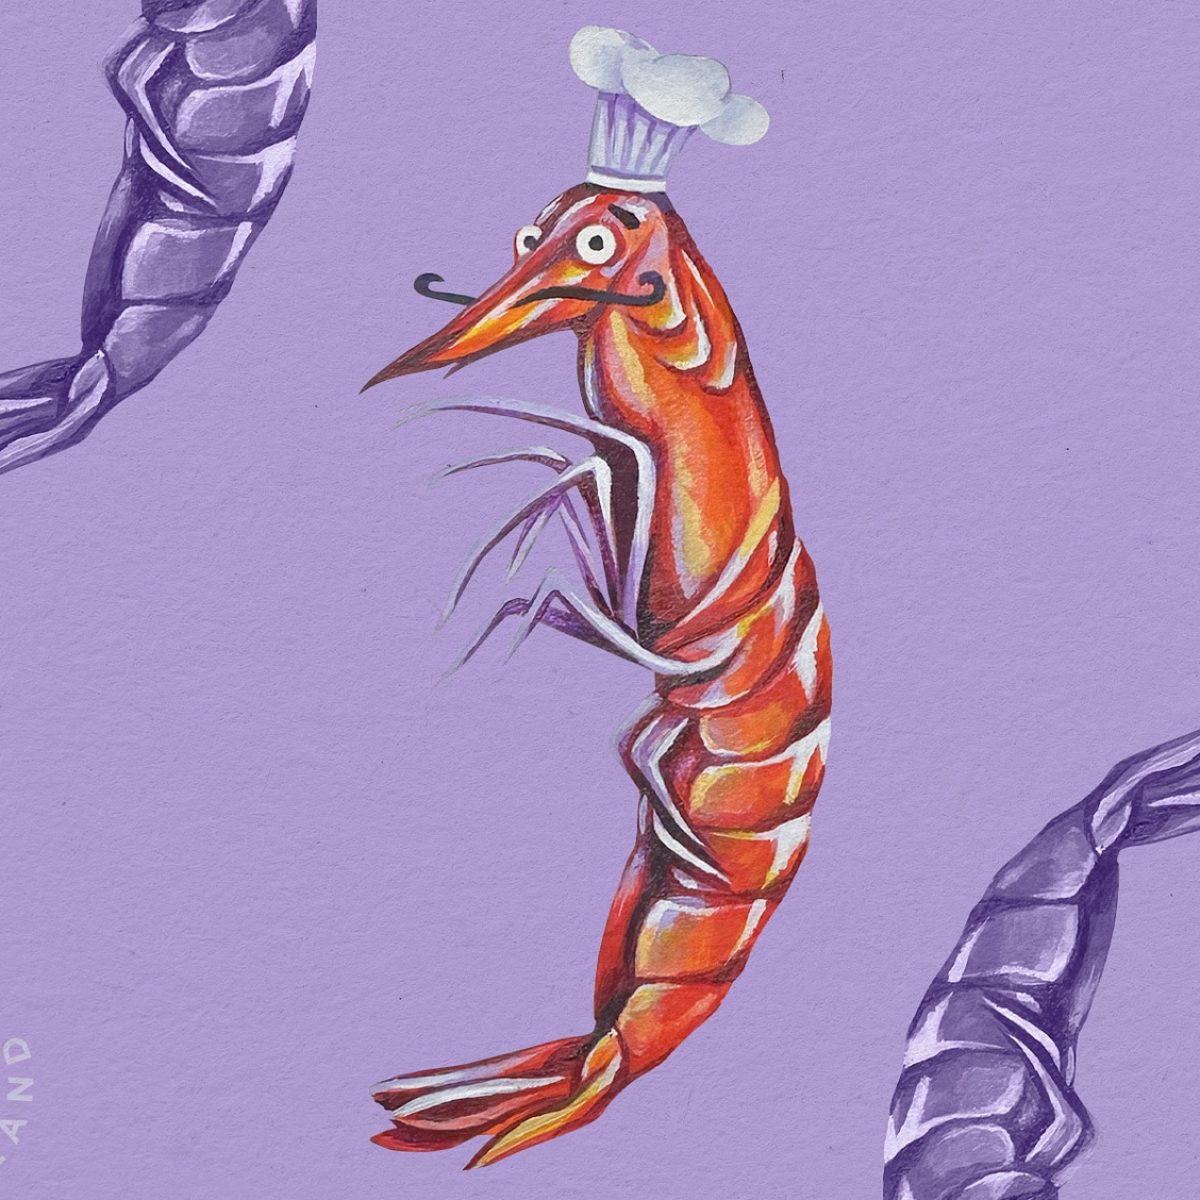 Custom Illustration Trout Seafood